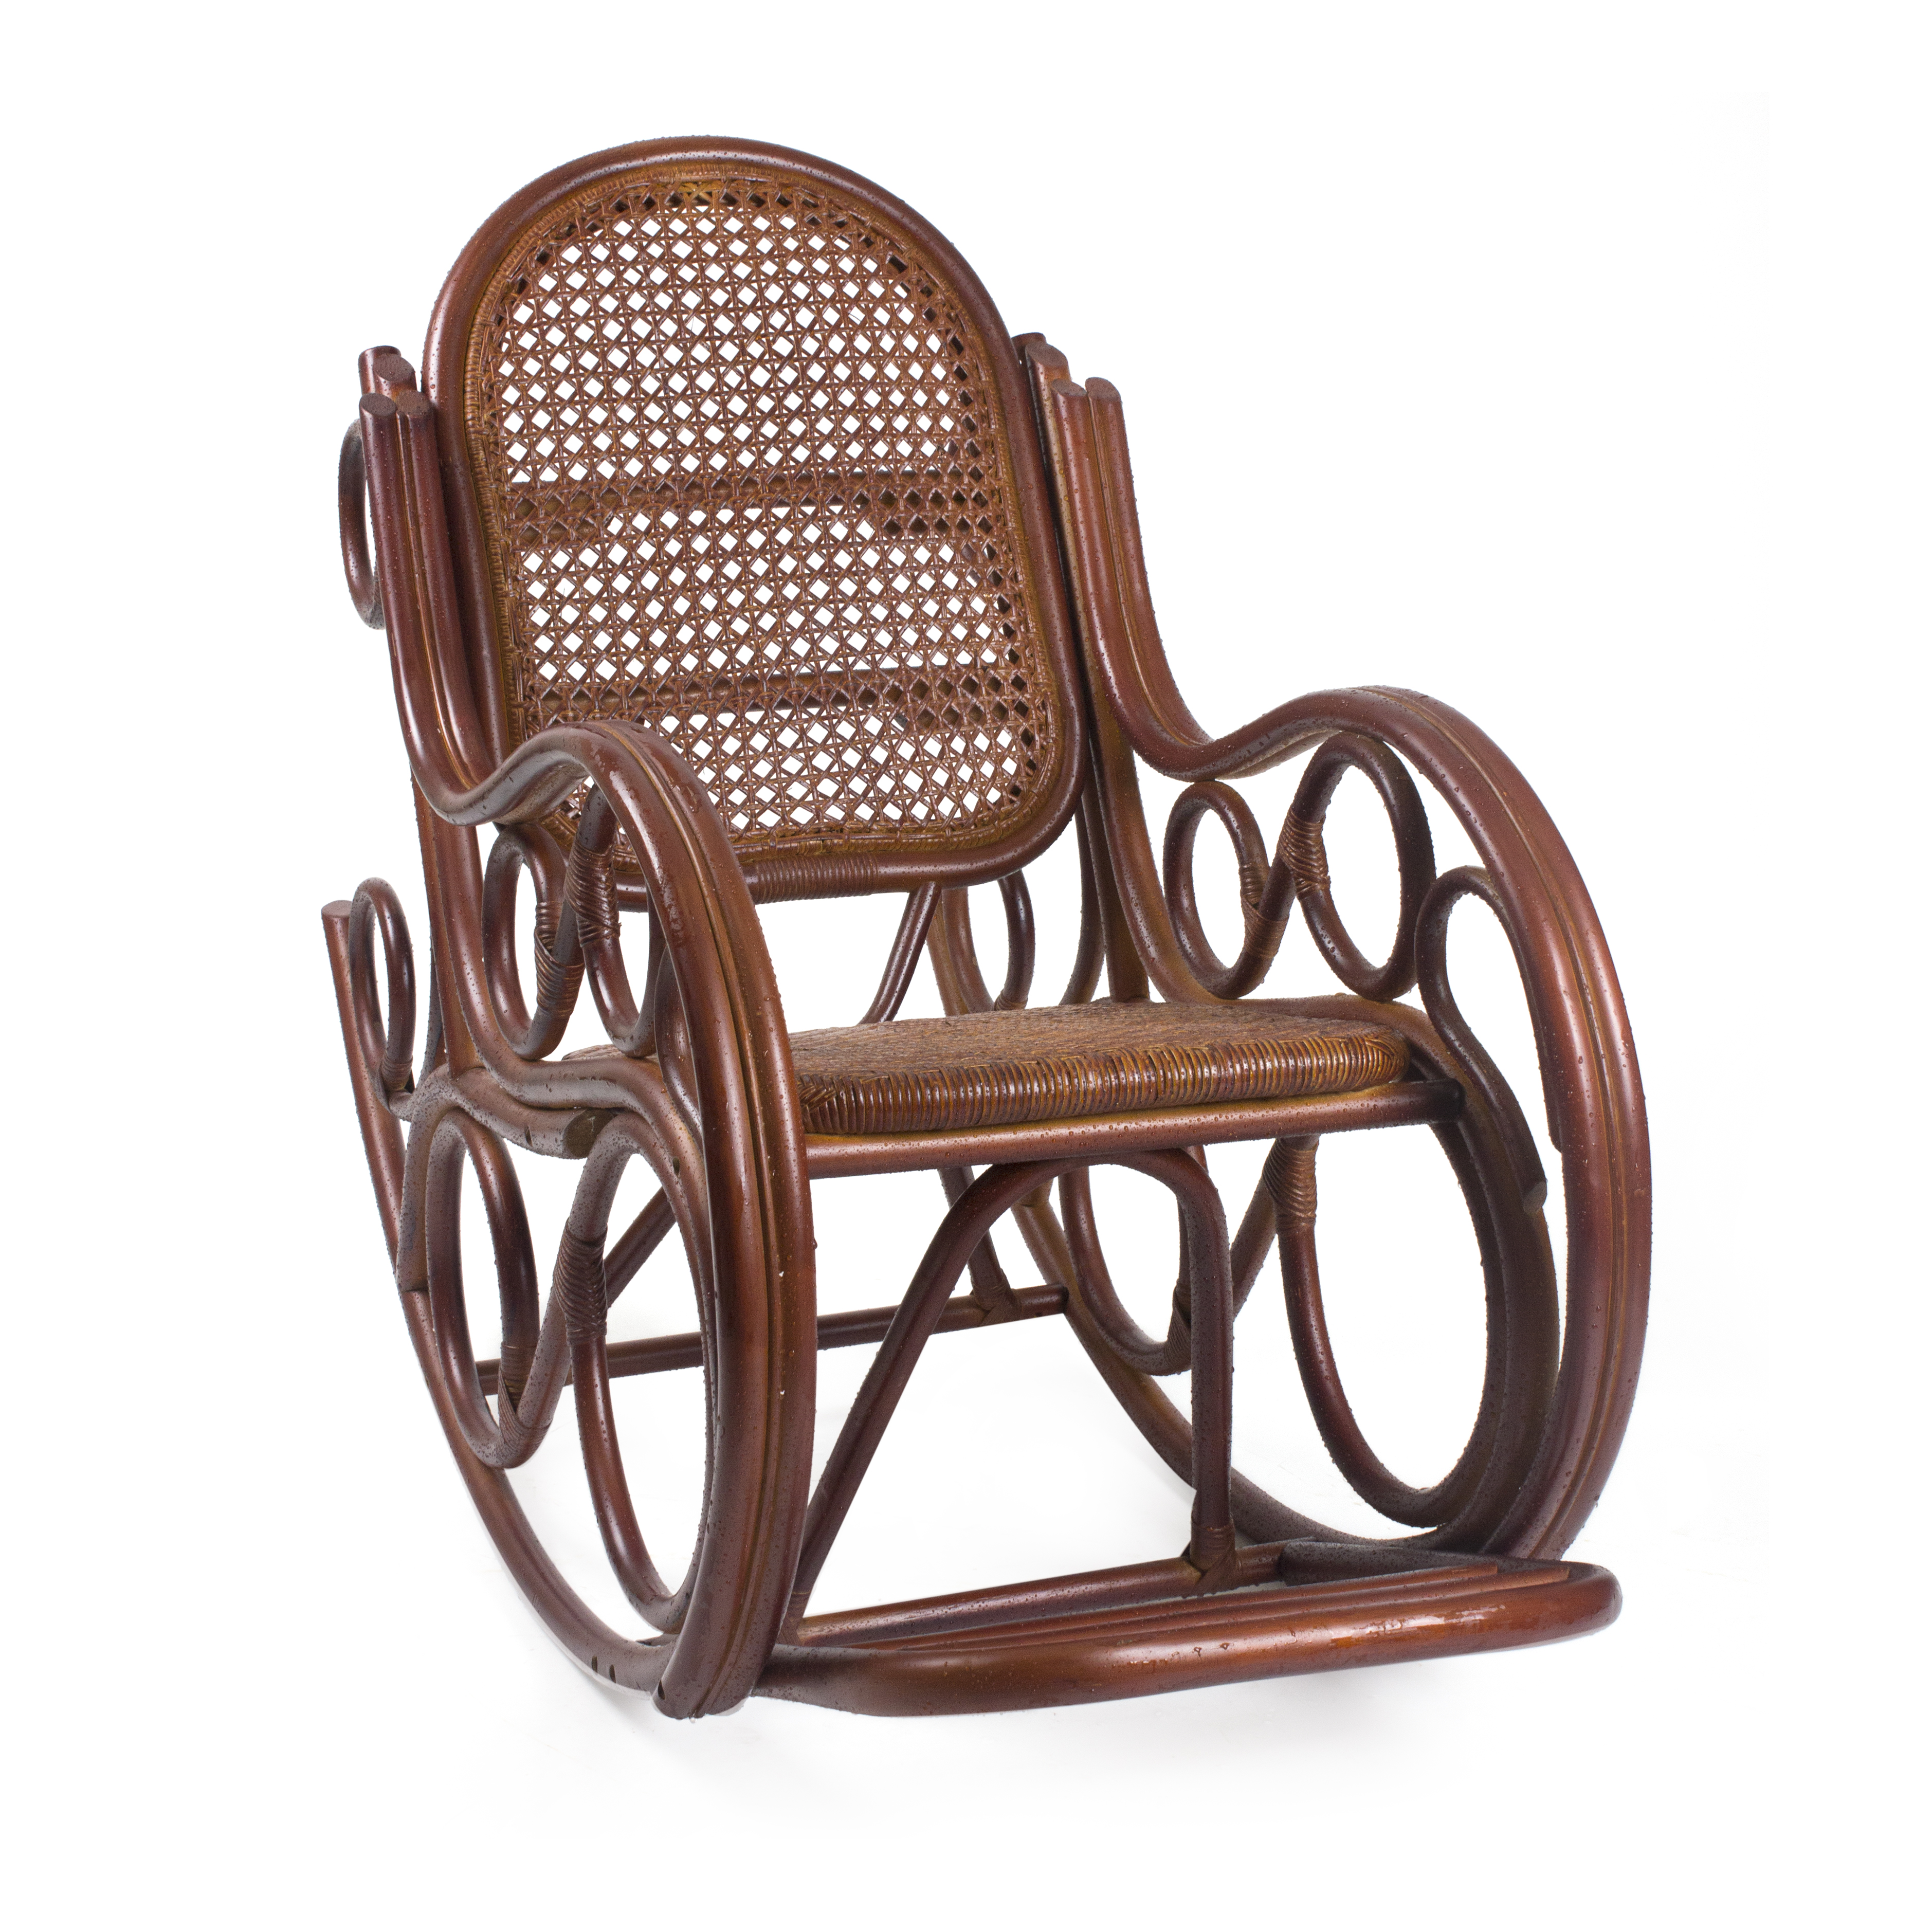 Недорогие кресла качалки от производителя. Mebel Impex кресло качалка. Кресло-качалка RATTANDESIGN. Кресло-качалка Ведуга. Кресло-качалка из ротанга "05/17 промо" (Promo).